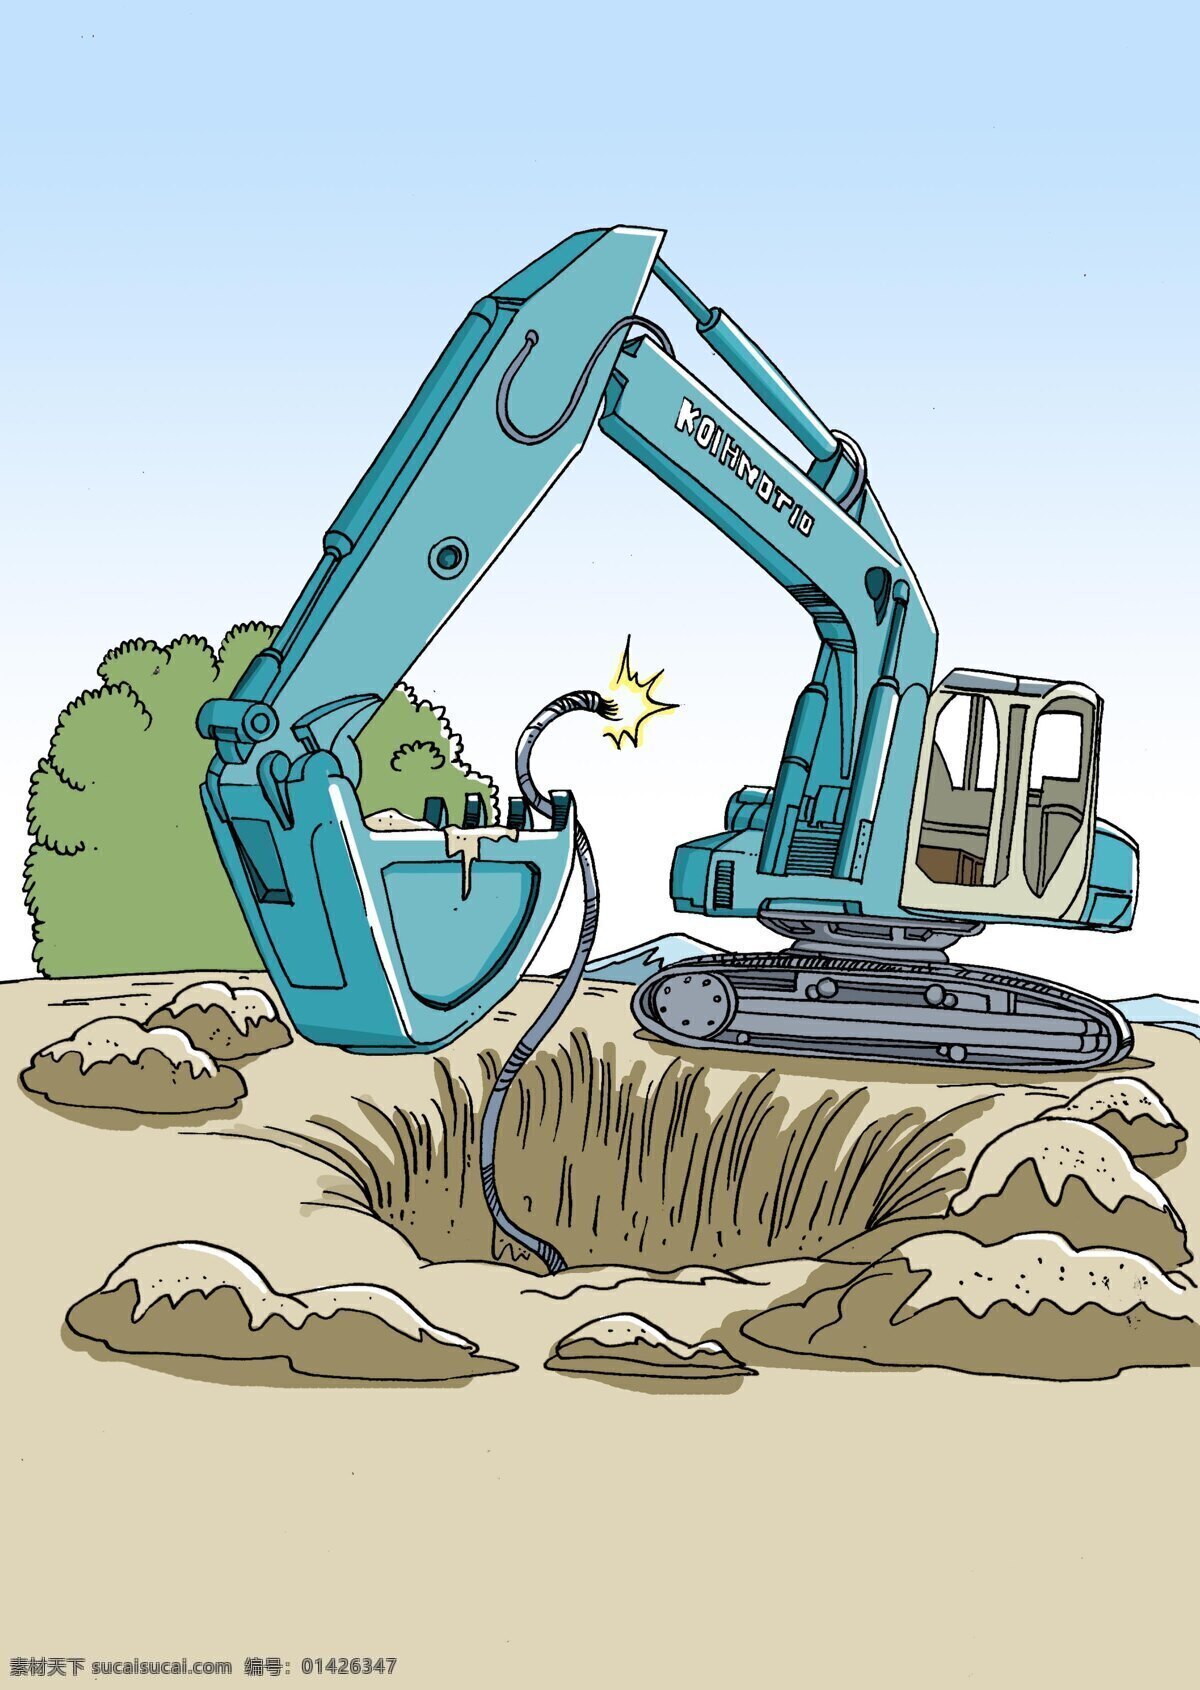 挖掘机 挖 断电 线 电力 施工 挖掘 漏电 电线断了 施工事故 工地 动漫人物 动漫动画